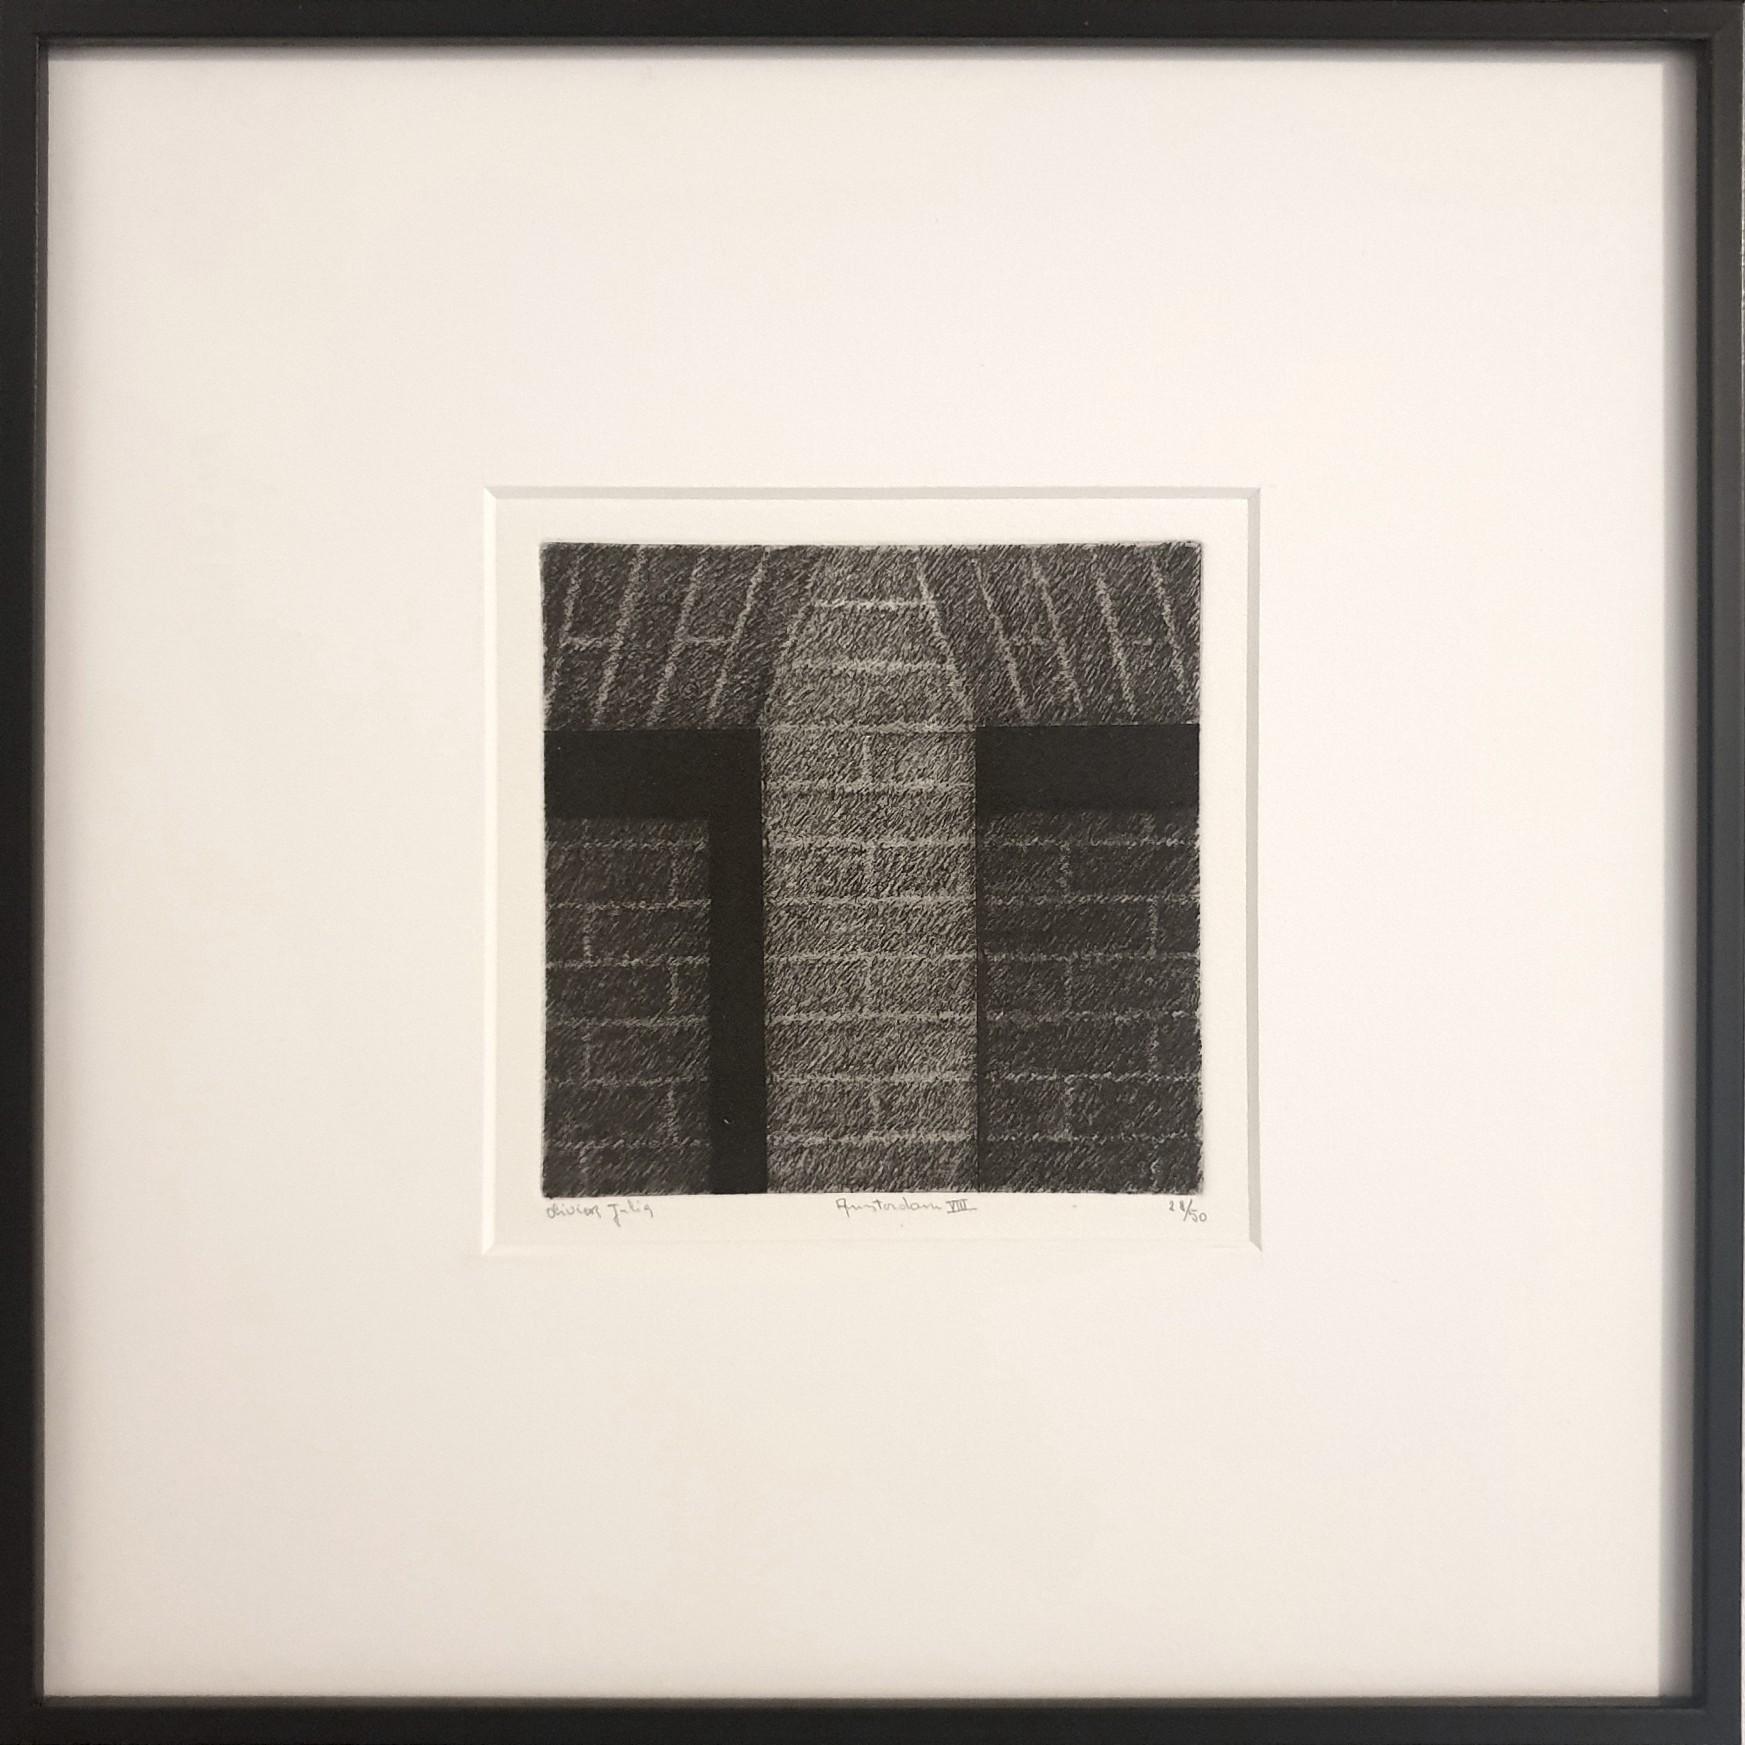 Olivier Julia Abstract Print – Amsterdam VIII. S. 28/50 - Museumsglas gerahmter schwarz-weißer Aquatinta-Radierung